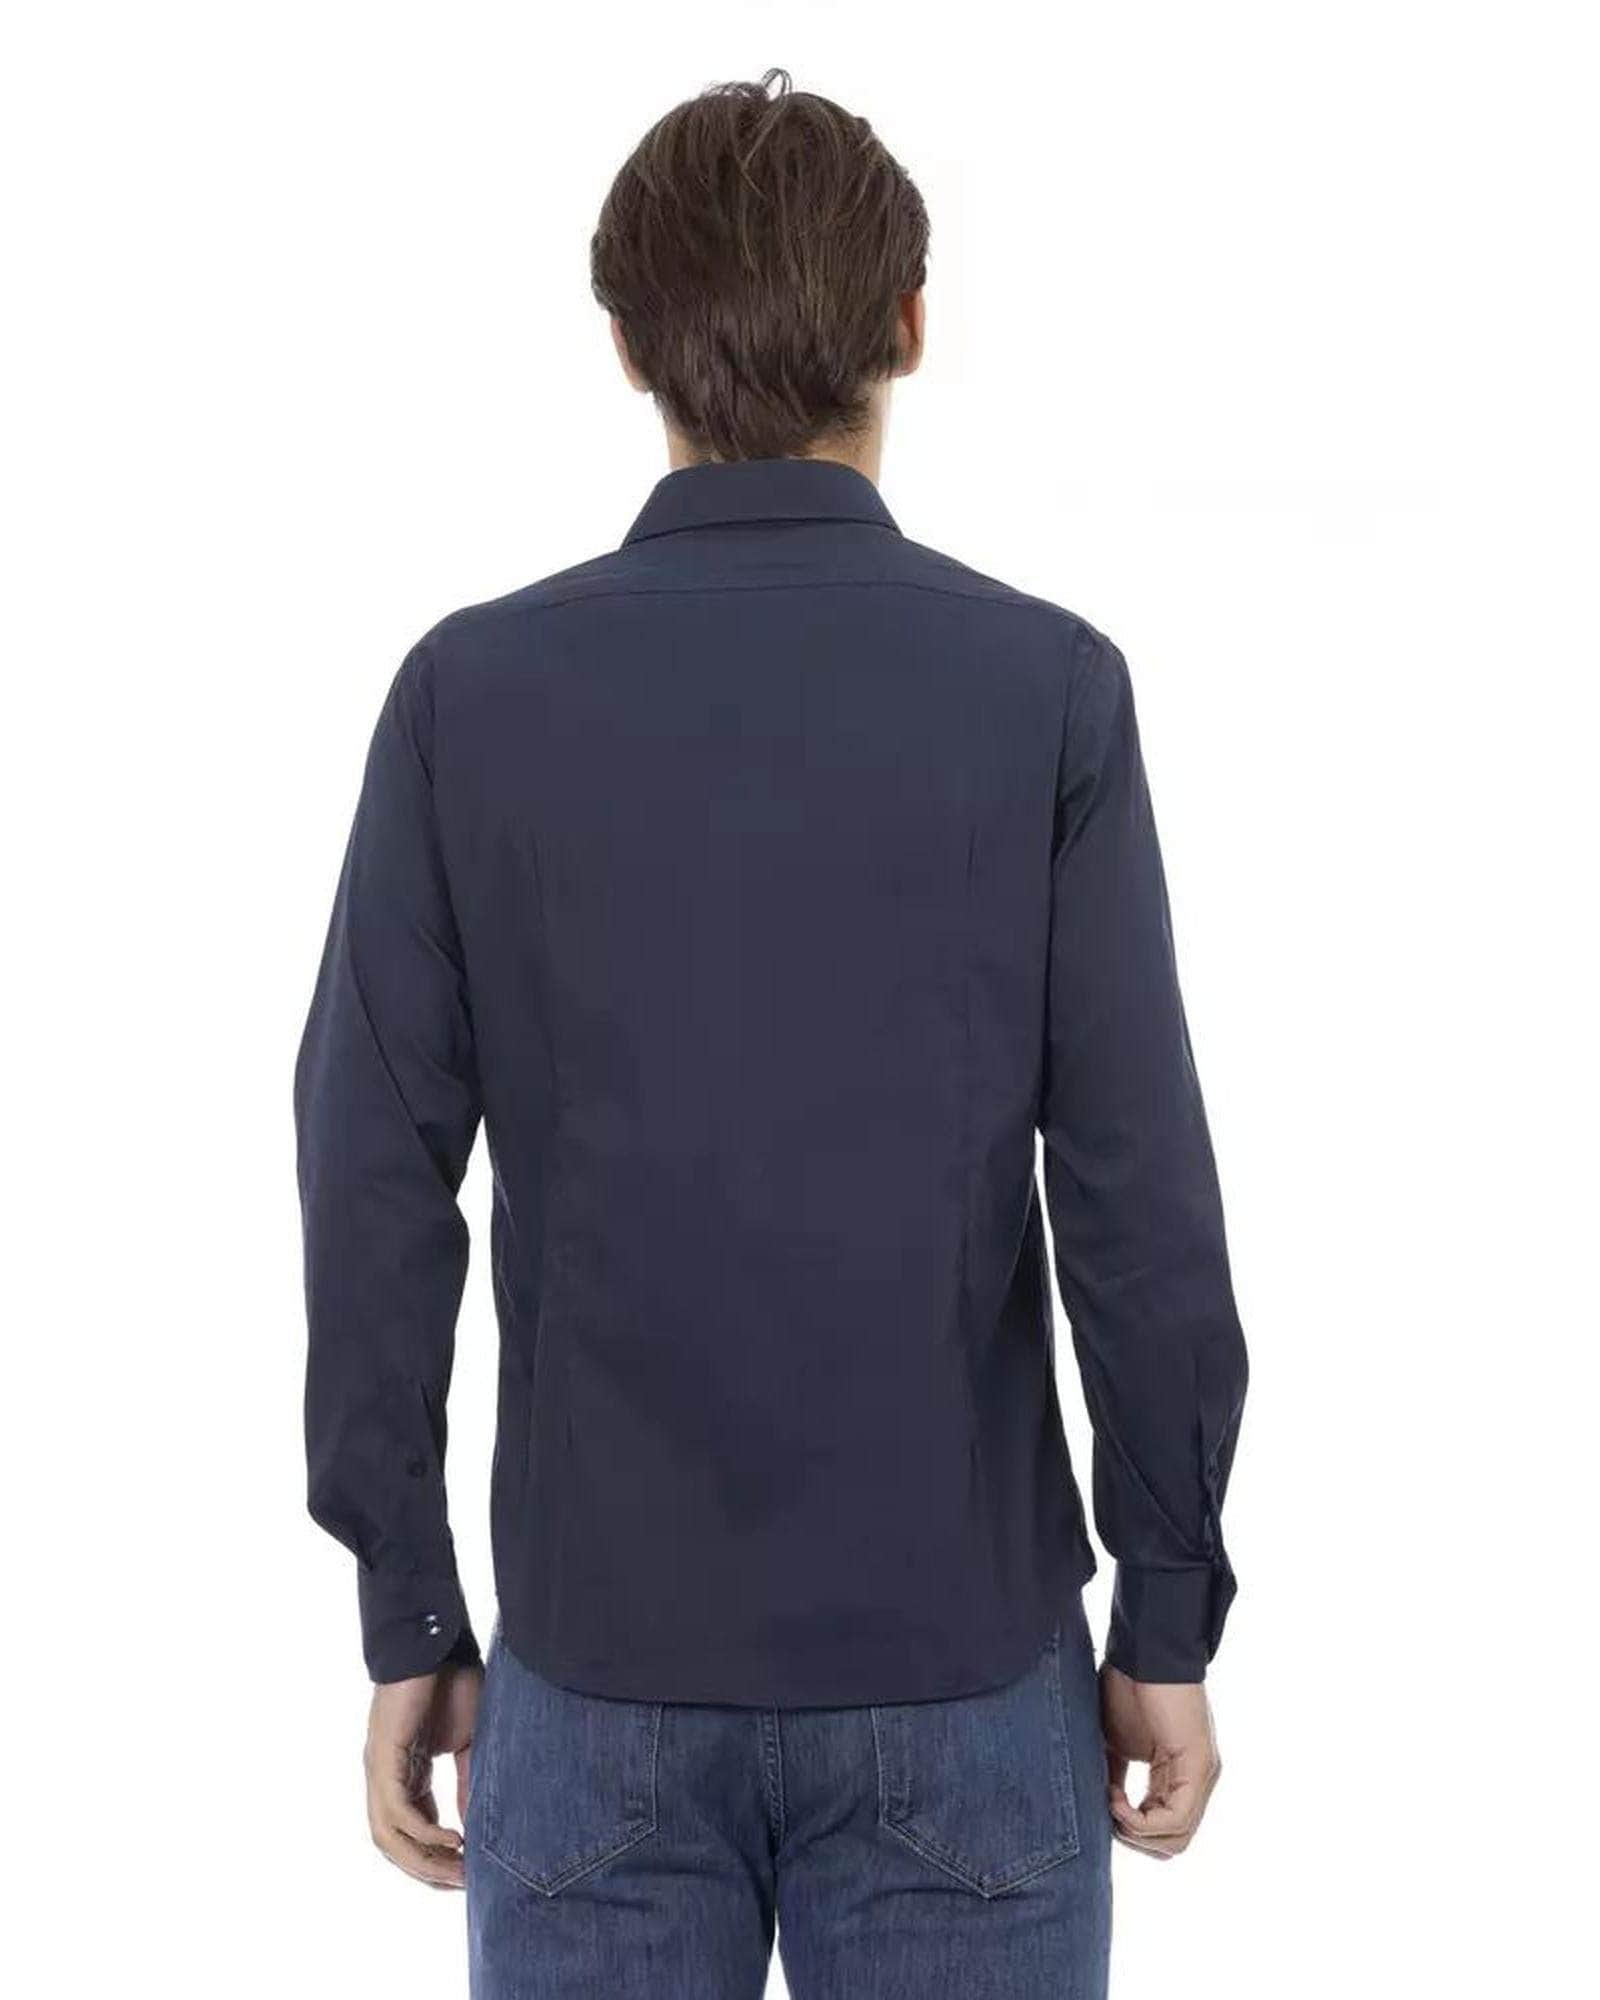 Sleek Men's Black/Bordeaux/Blue Cotton Shirt